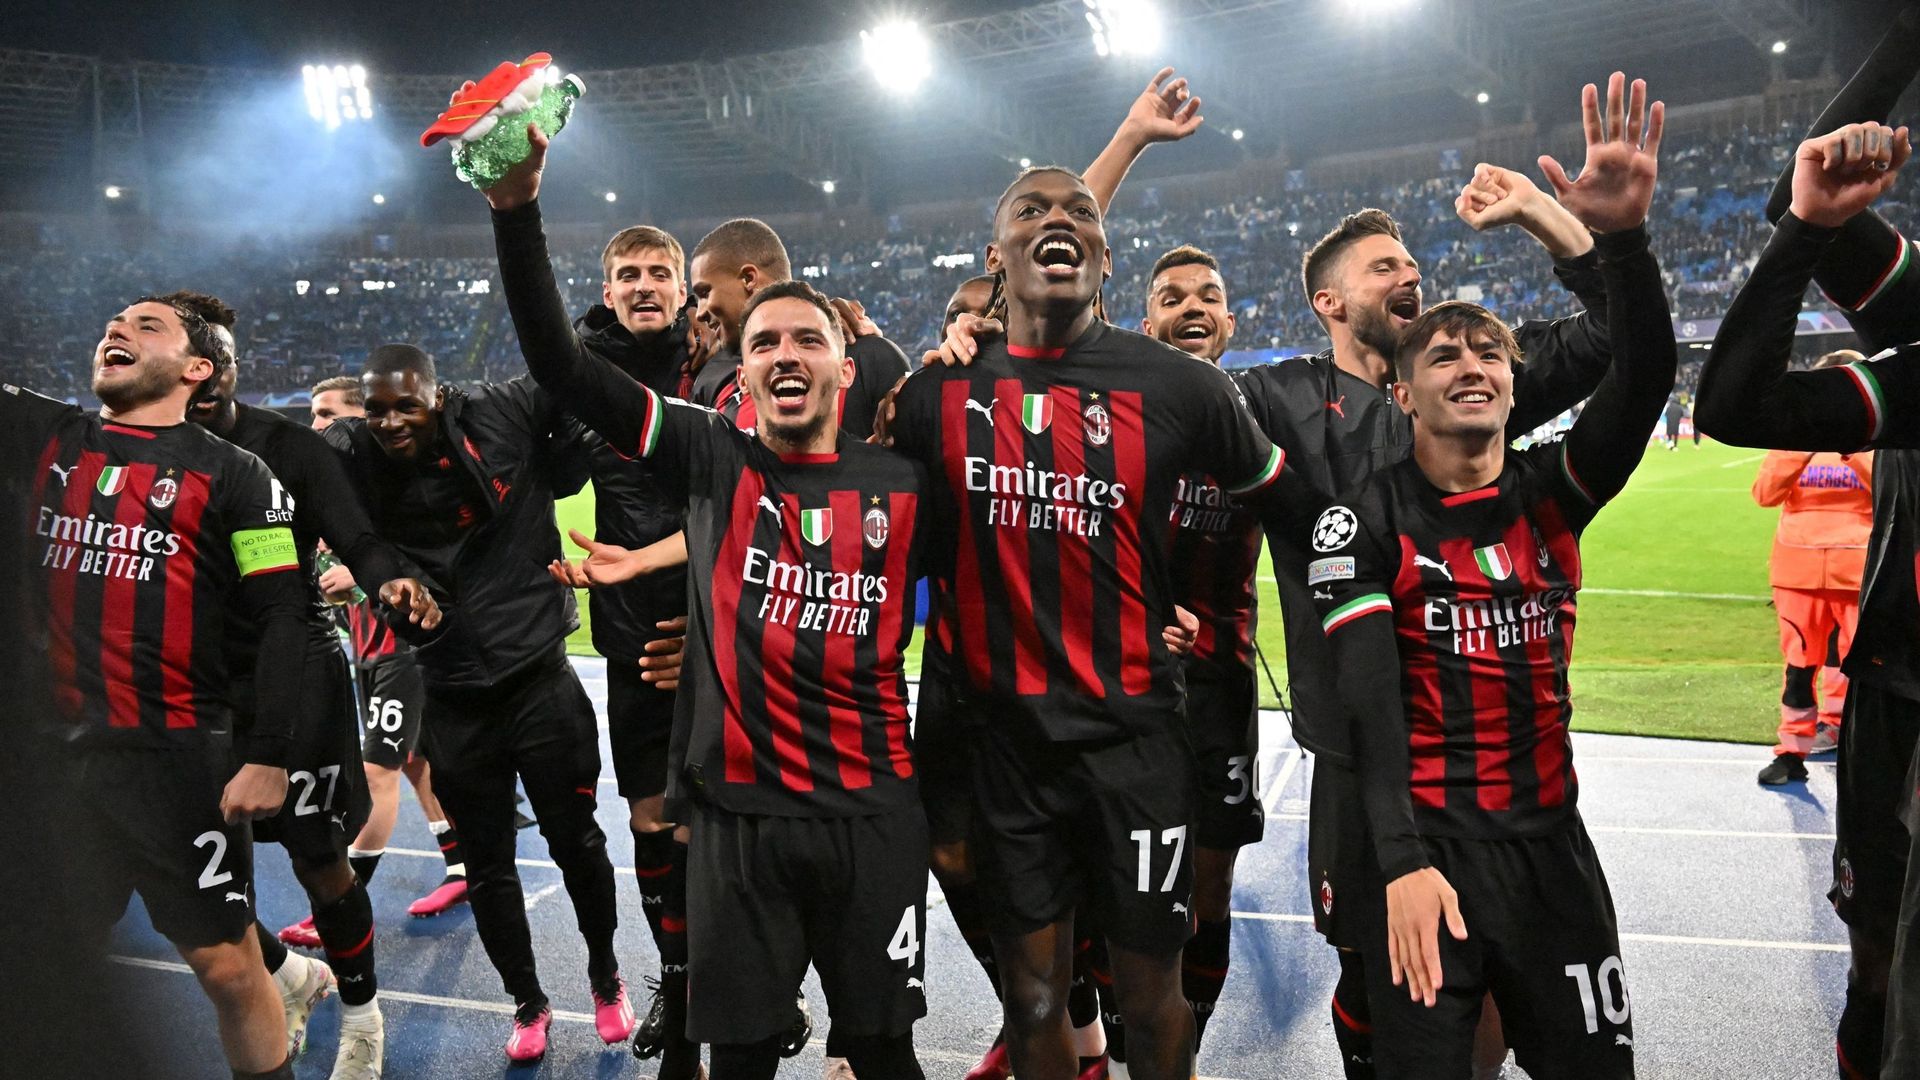 La joie des joueurs milanais après avoir éliminé Naples en quart de finale de Champions League.